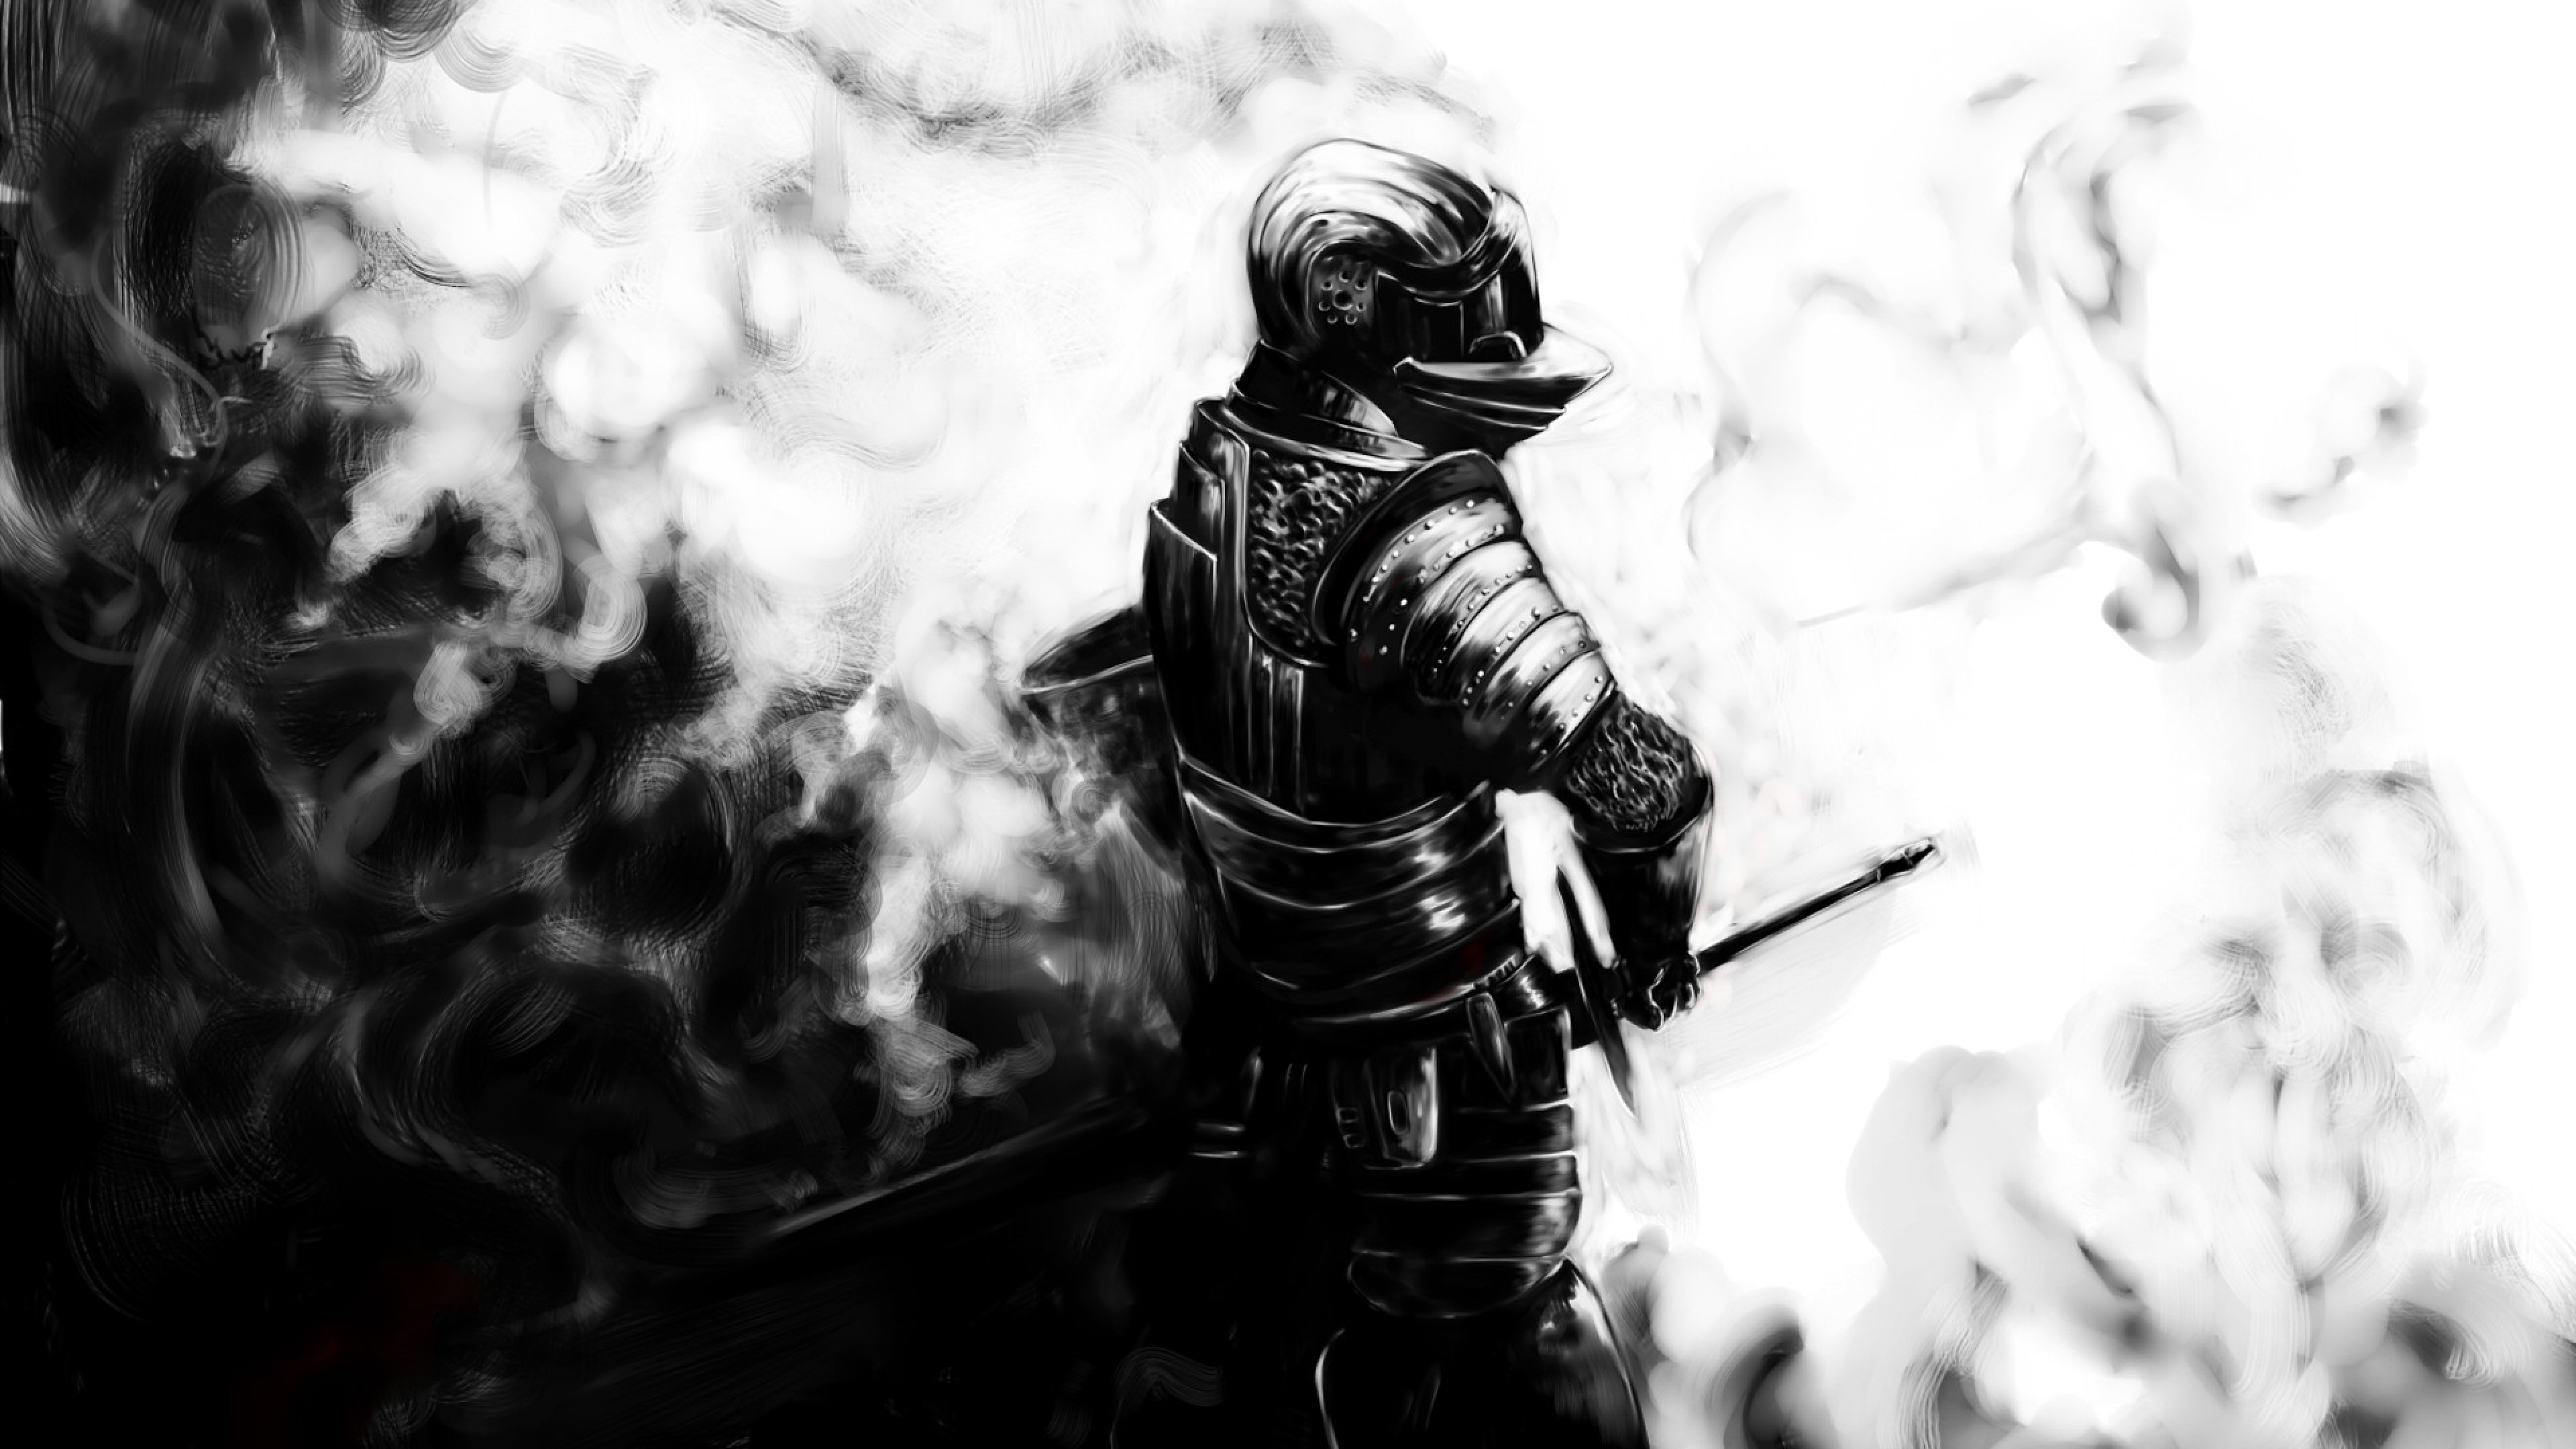  Dark souls Knight Sword Armor Helmet Wallpaper Background 4K